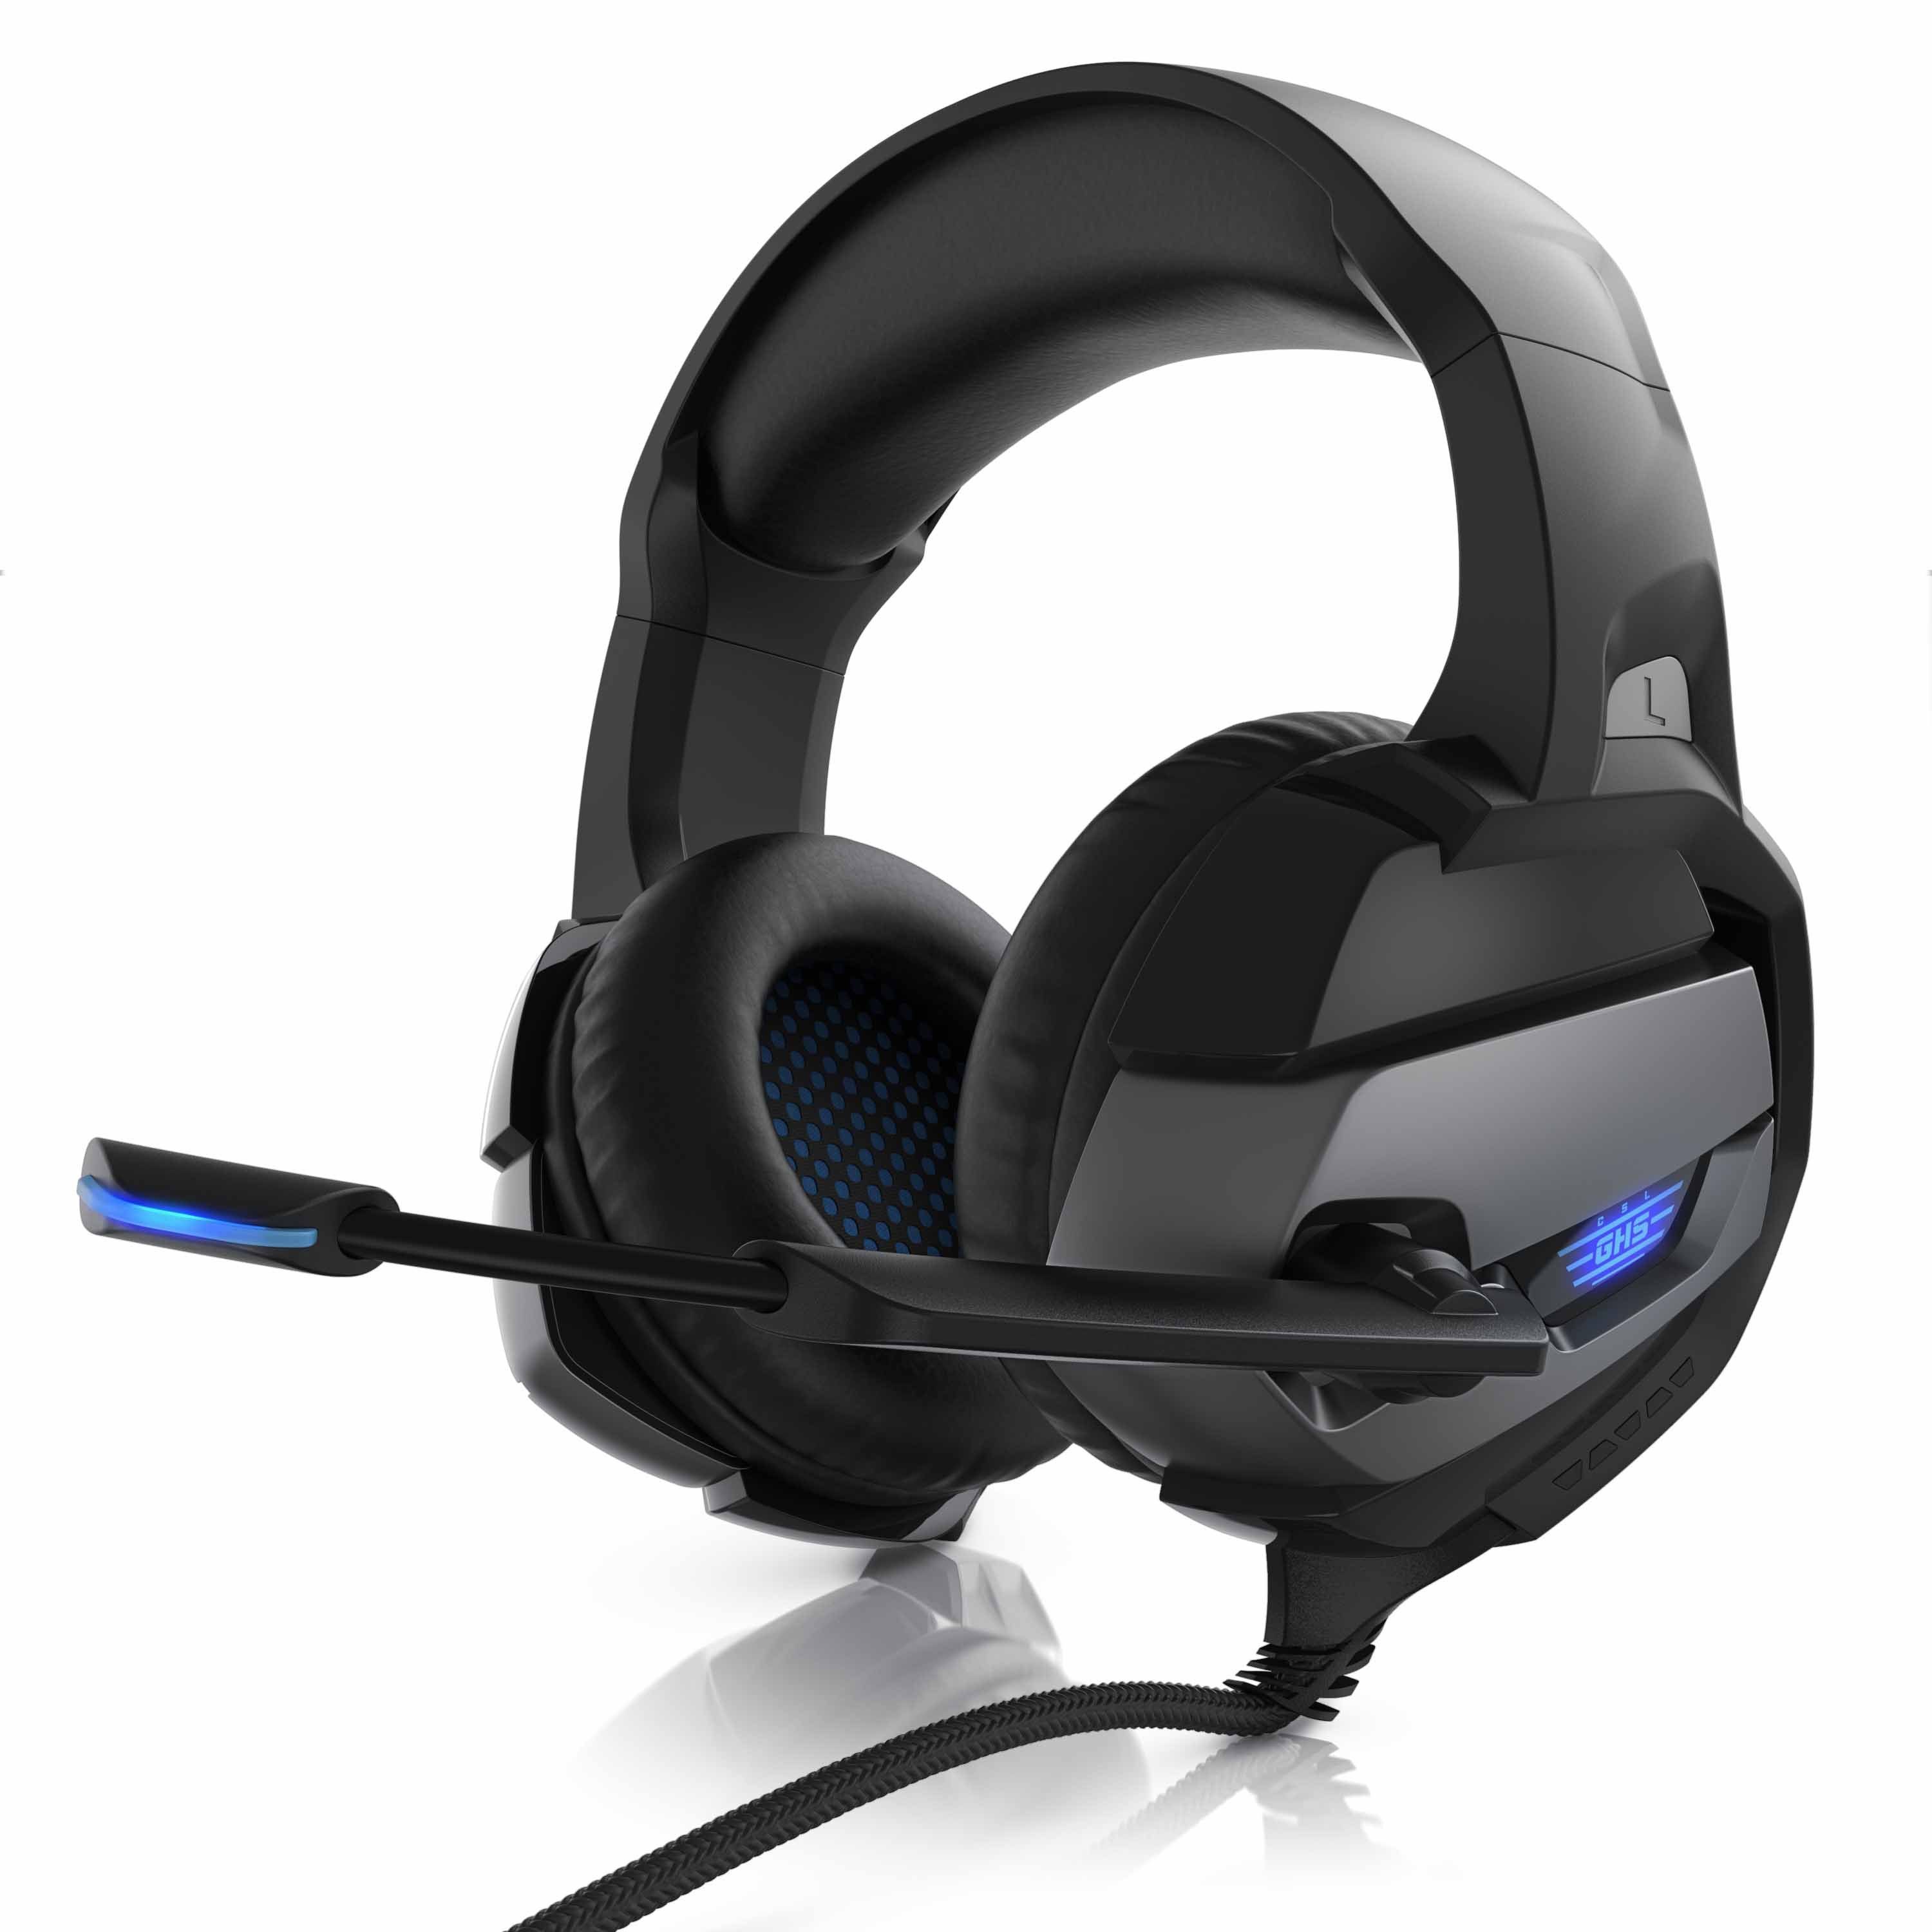 CSL Gaming-Headset (Blaue LED-Beleuchtung; Kopfbügel variabel verstellbar;  Bietet kristallklaren Hoch-, Mittel- und Tieftonbereich + dynamische  Basswiedergabe, USB Gaming Headset "GHS - 201" mit Mikrofon Kopfhörer für  Windows, Mac, PS3, PS4, PS4 Pro)